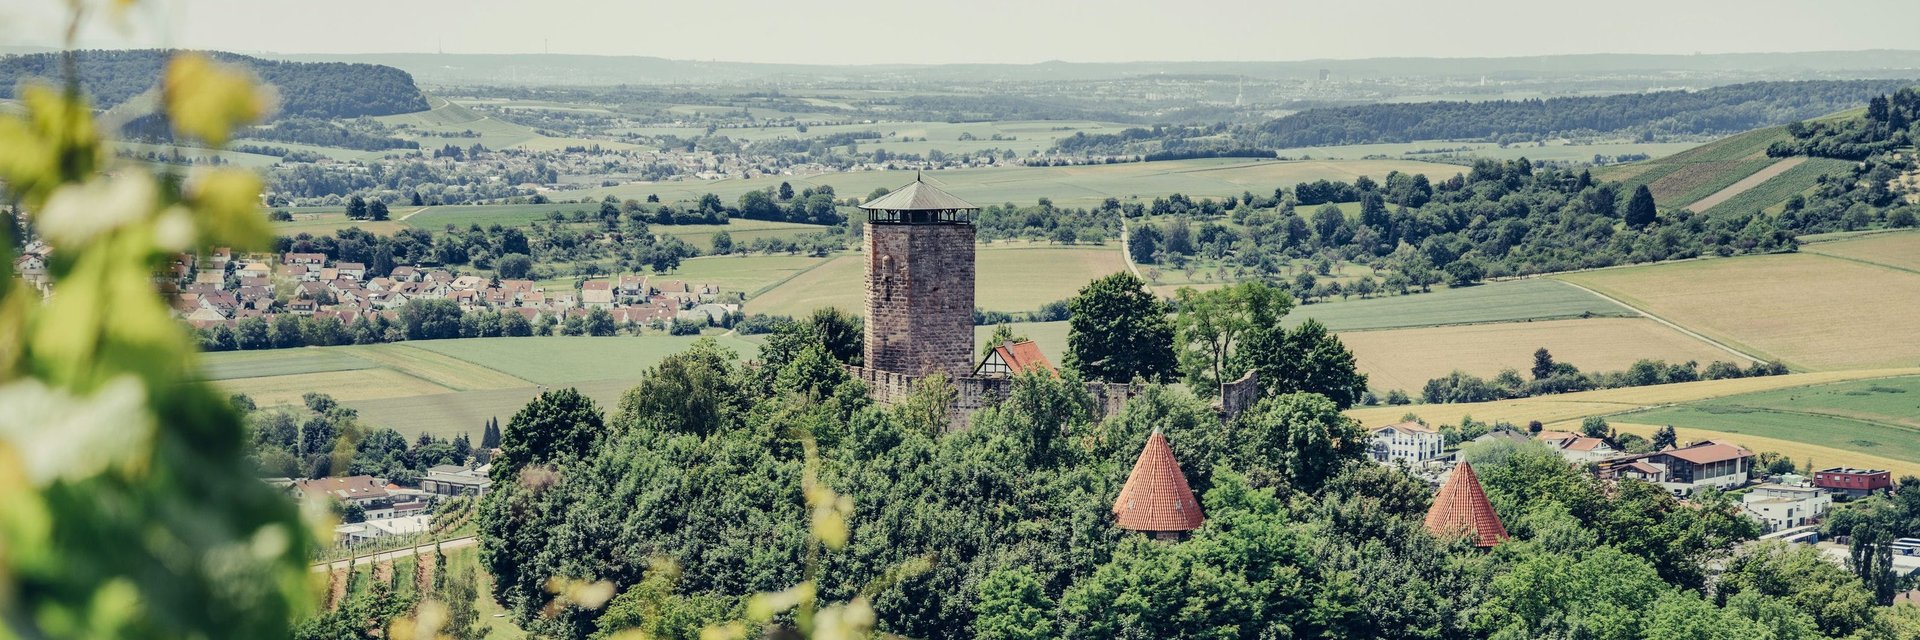 Wartkopf mit Blick auf Burg Hohenbeilstein | HeilbronnerLand | Wohnmobilreisen Baden-Württemberg